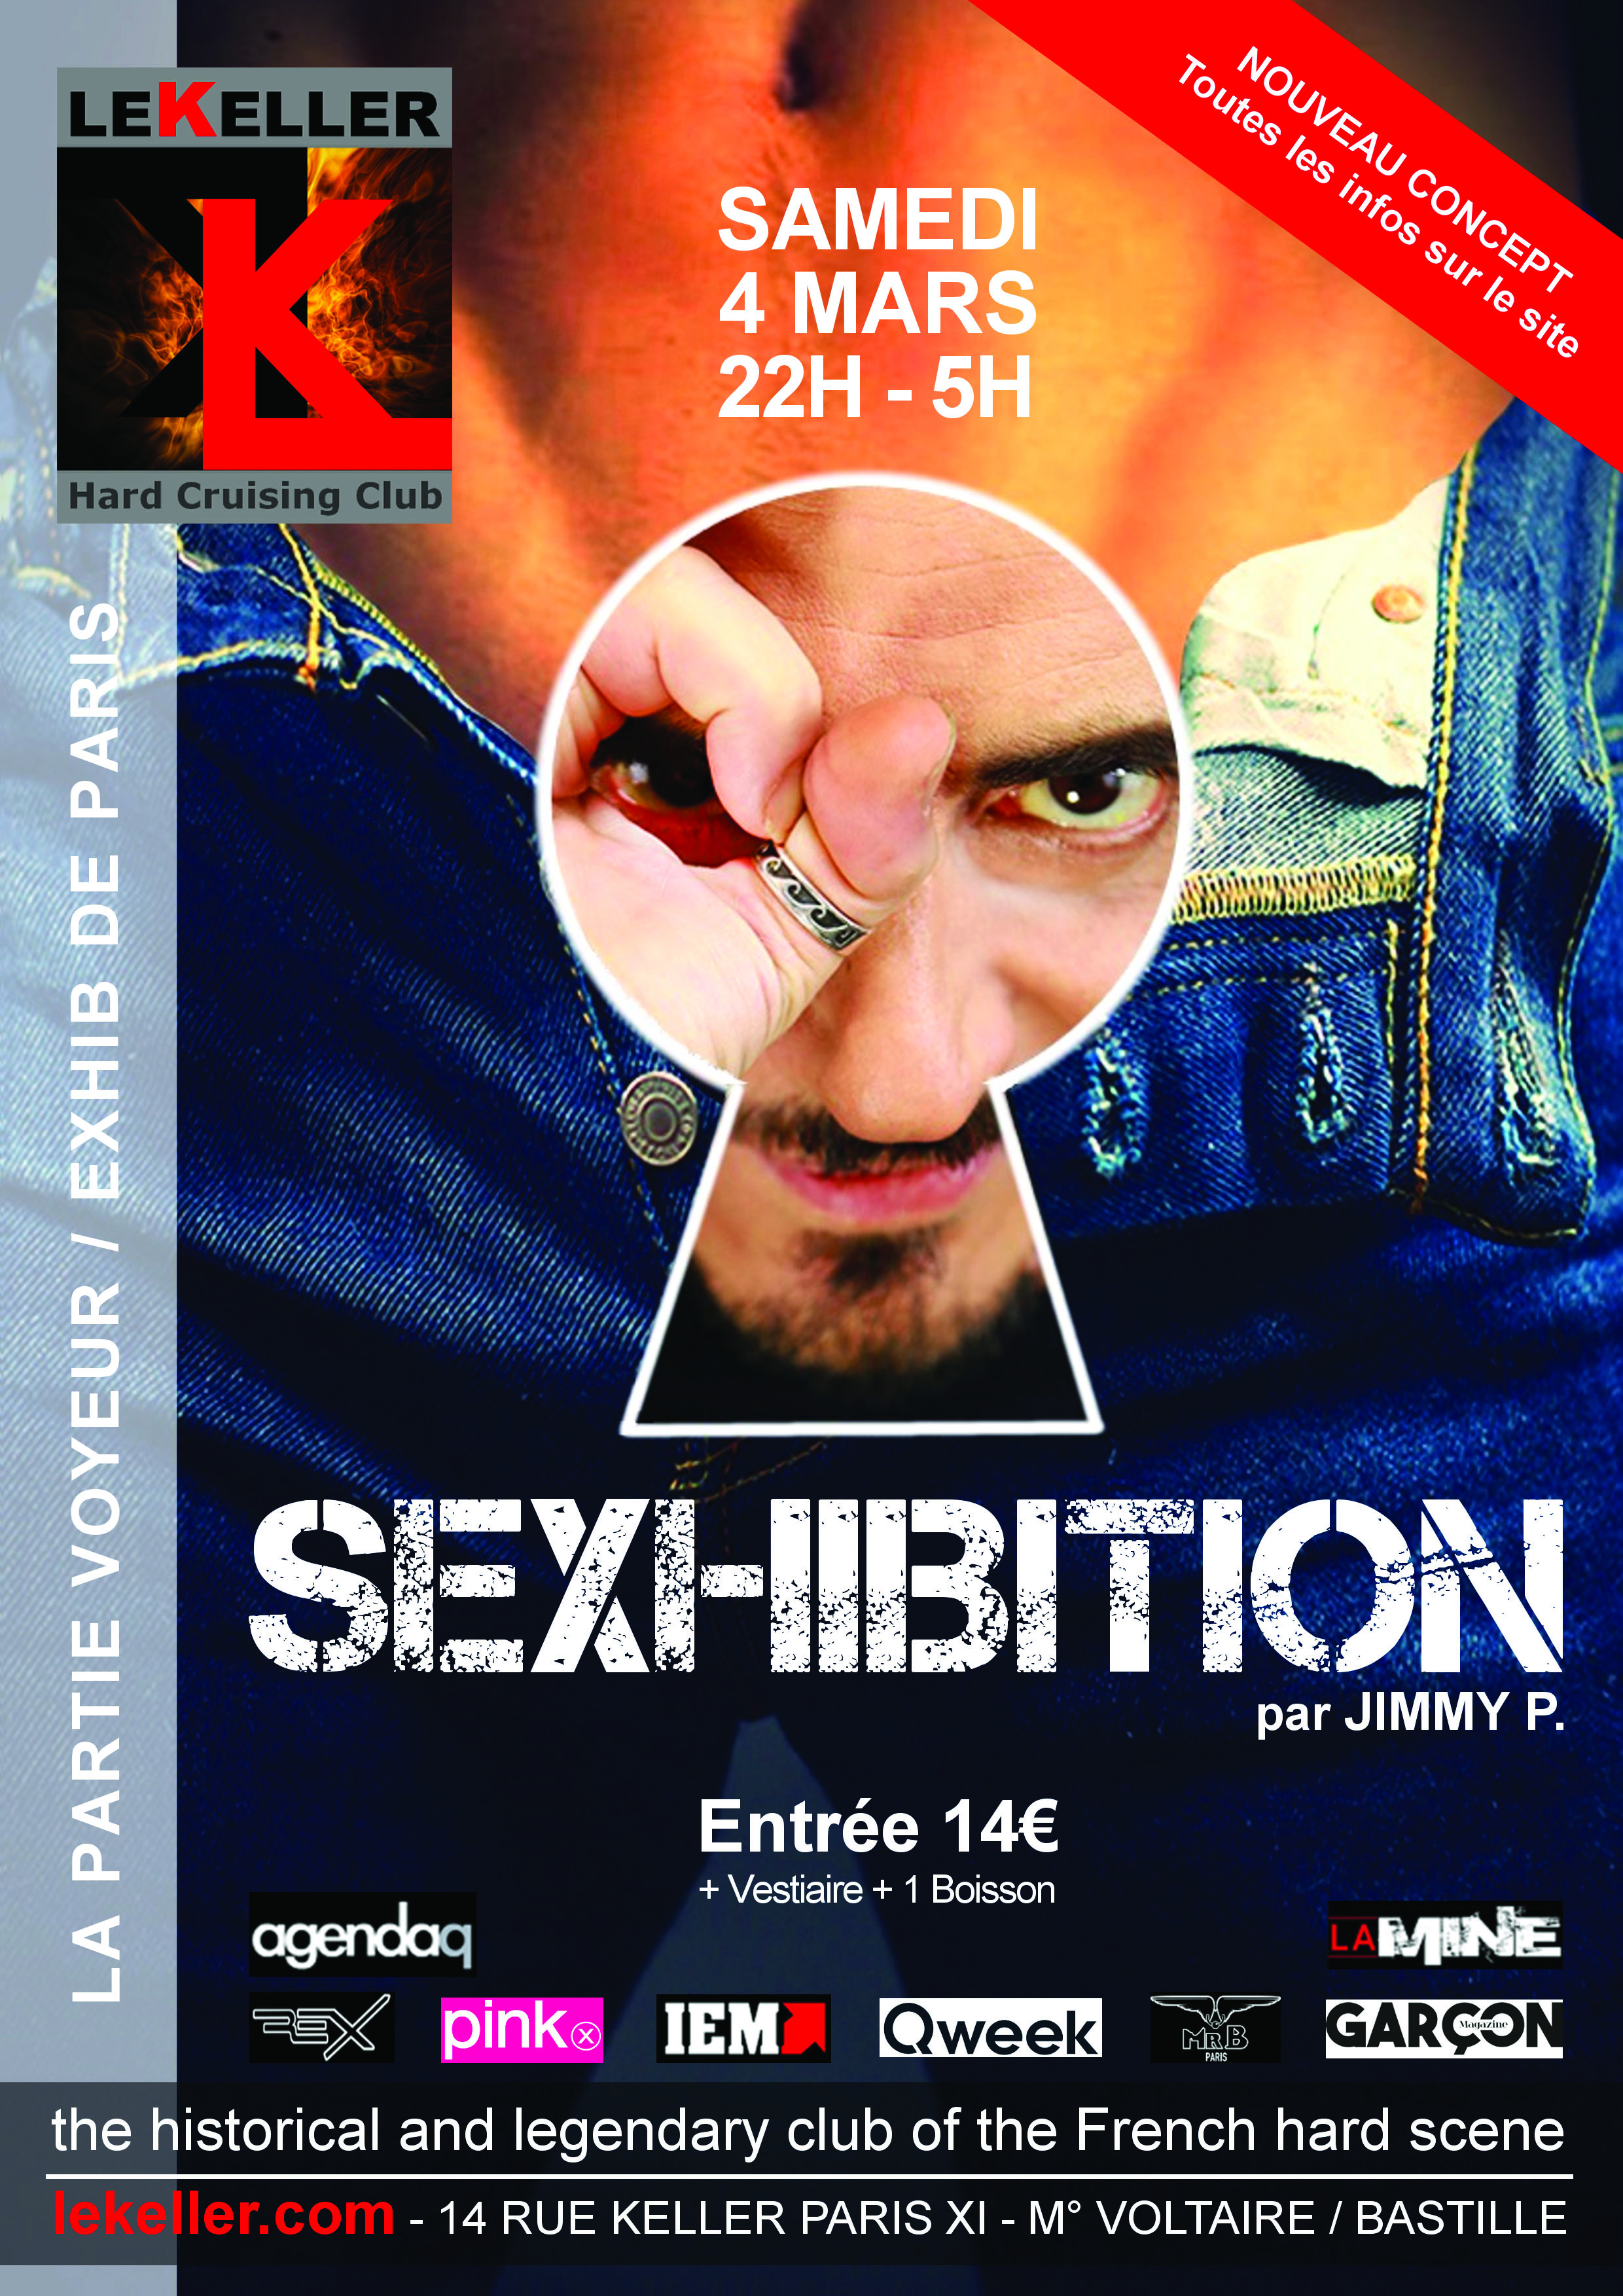 Sexhibition, ça promet dêtre show ! image image